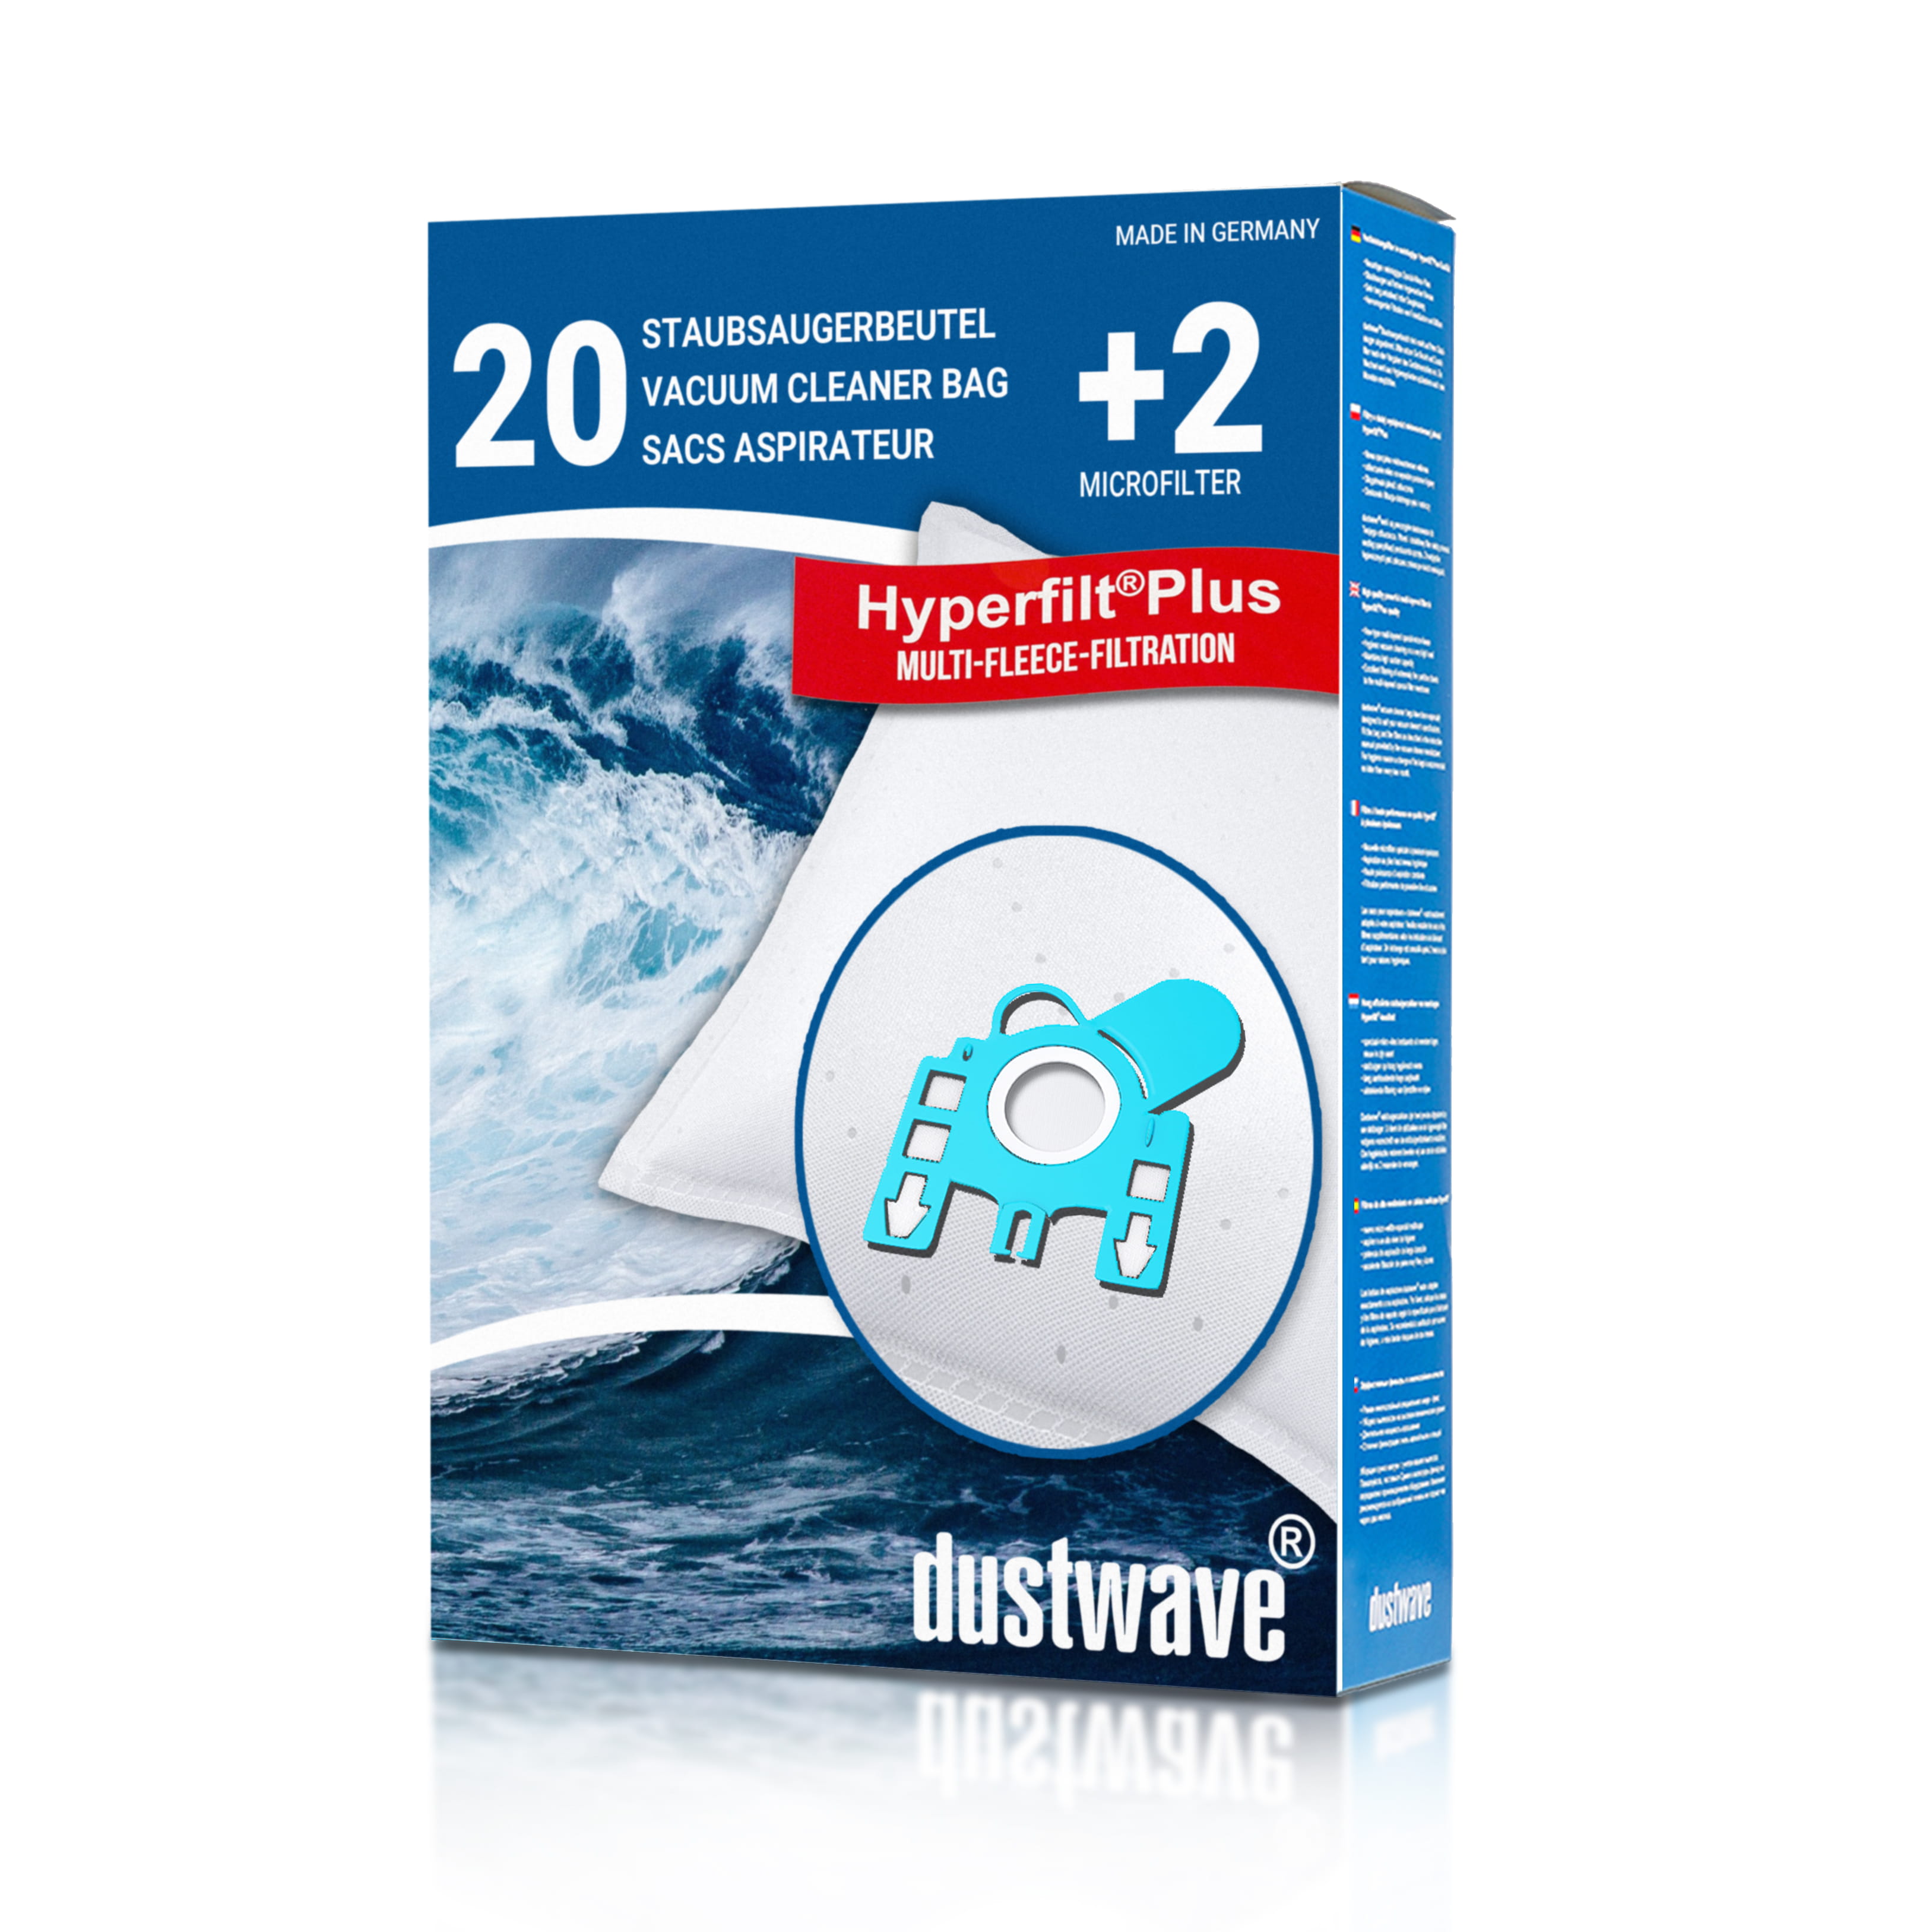 Dustwave® 20 Staubsaugerbeutel für Hoover AT70 AT01011 Athos - hocheffizient, mehrlagiges Mikrovlies mit Hygieneverschluss - Made in Germany